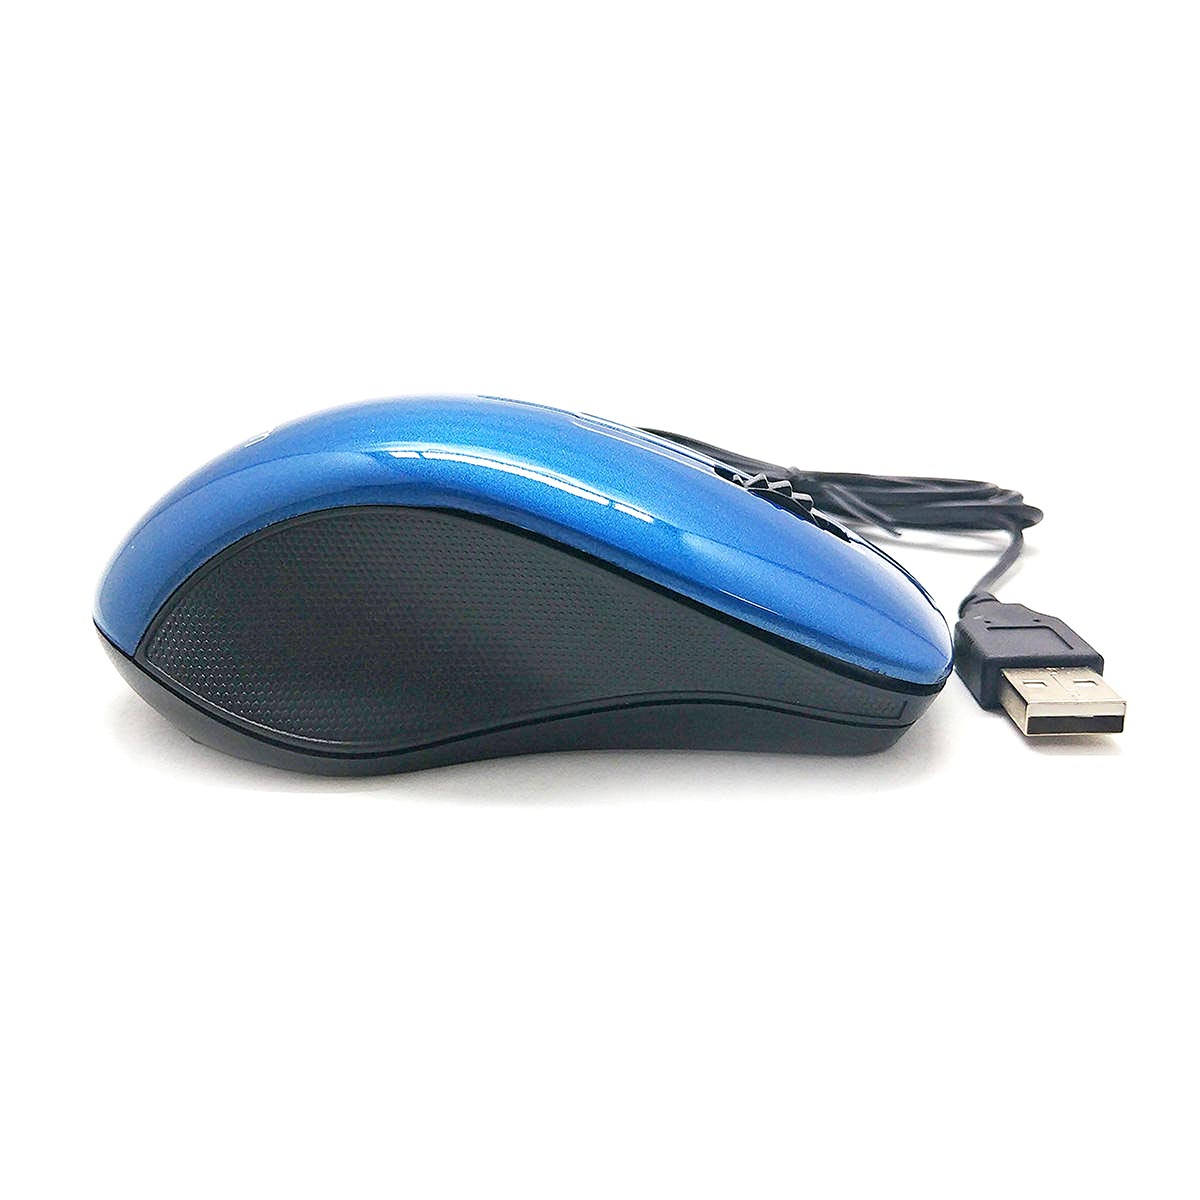 Mouse com cabo USB 1000DPIs Exbom MS-47 Azul com Acabamento Brilhante